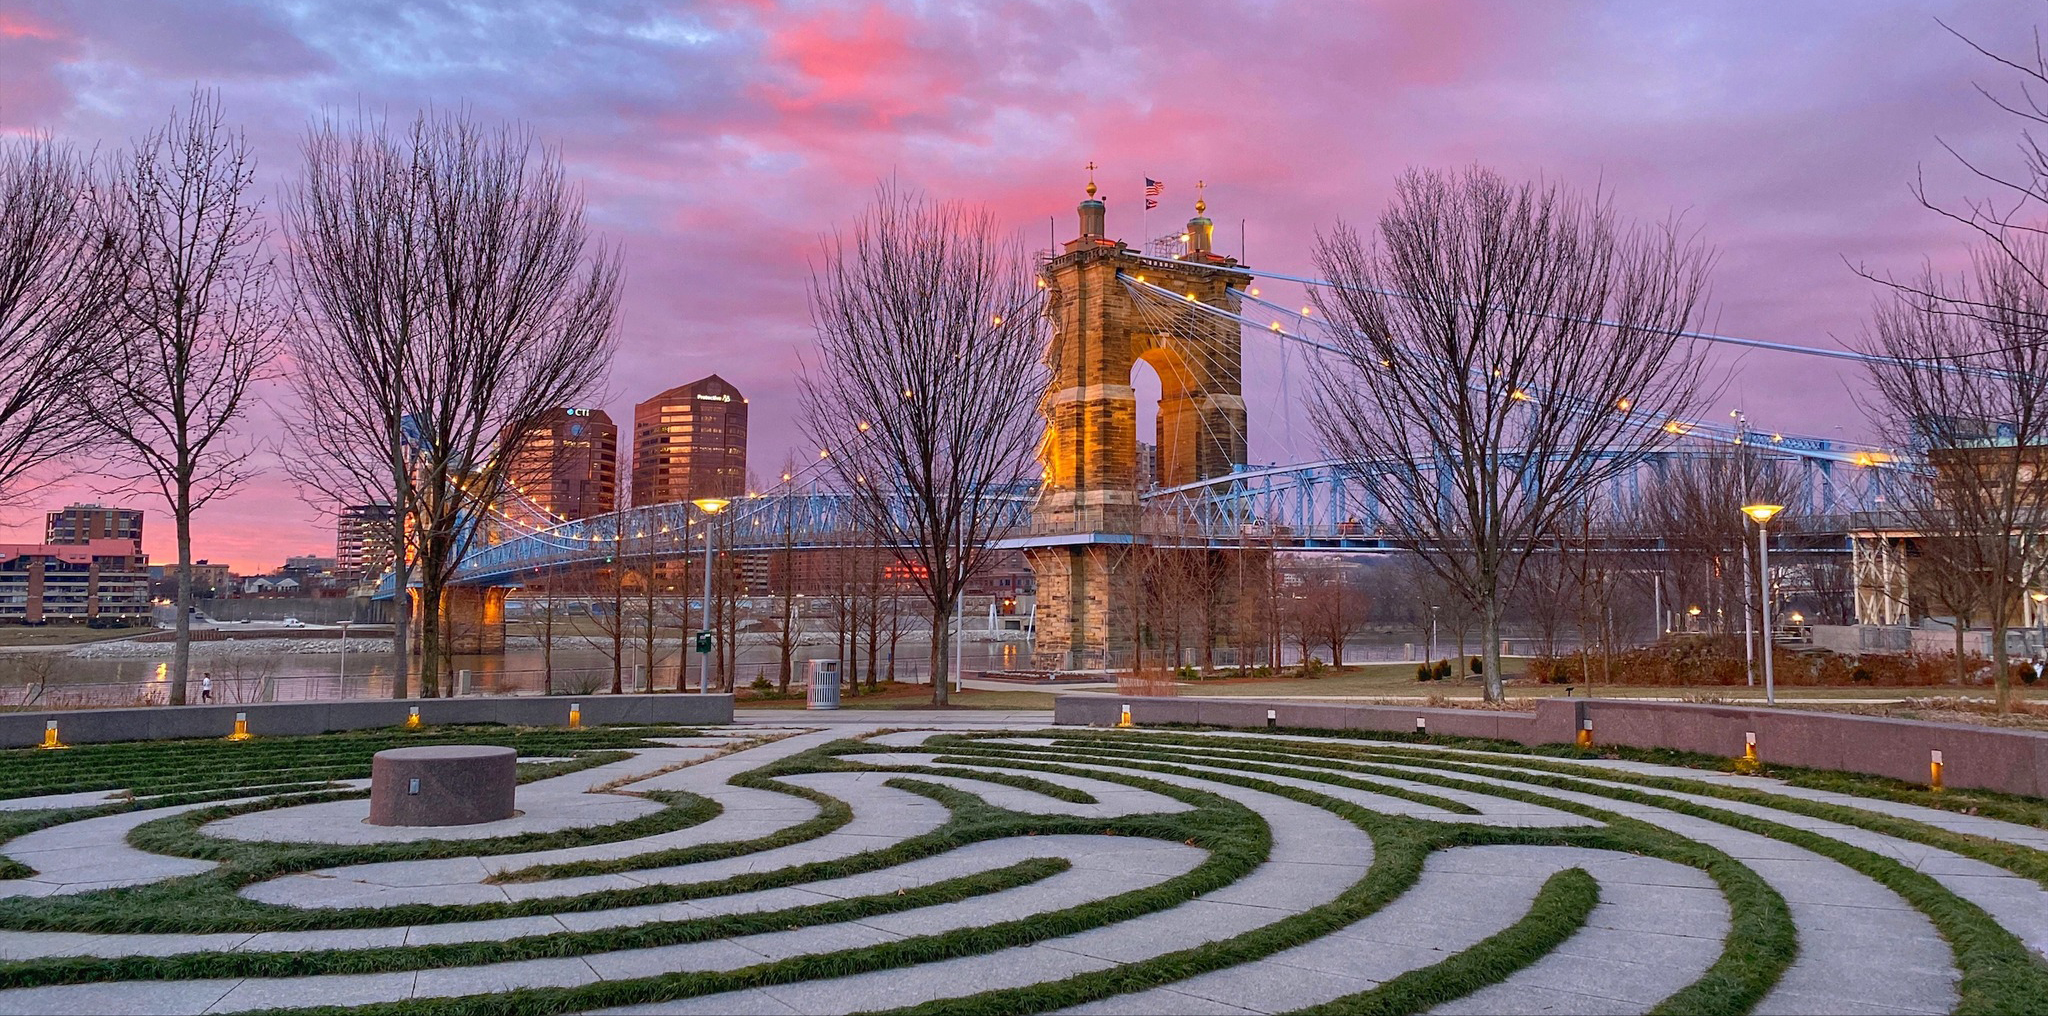 Landscaping Cincinnati: Hardscape Features Can Double as Art